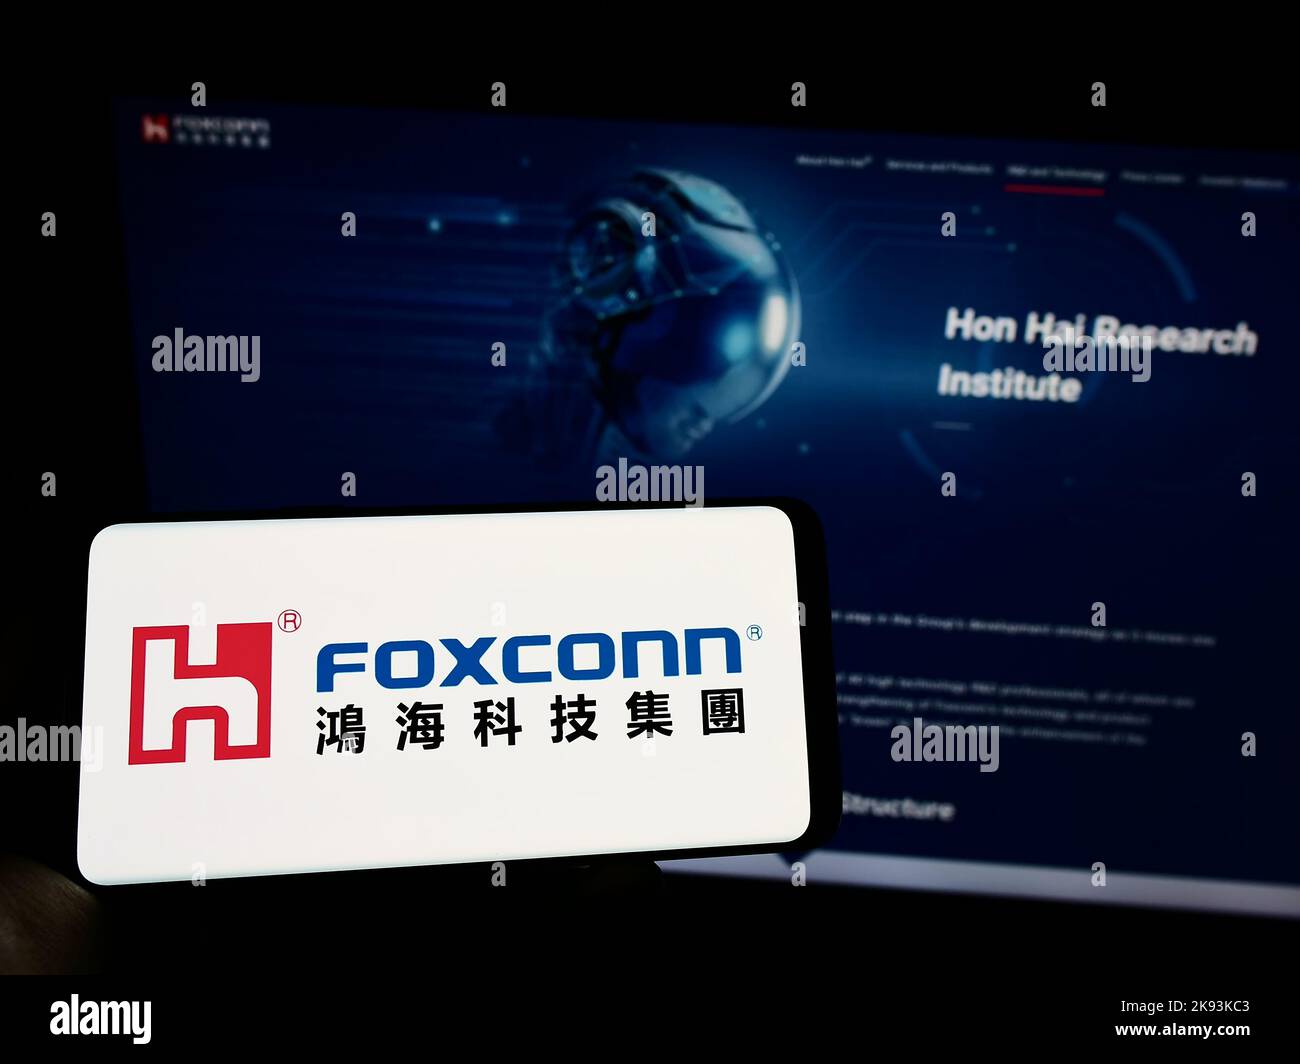 Persona che tiene il cellulare con il logo di Hon Hai Precision Industry Co. Ltd. (Foxconn) sullo schermo di fronte al sito web. Messa a fuoco sul display del telefono. Foto Stock